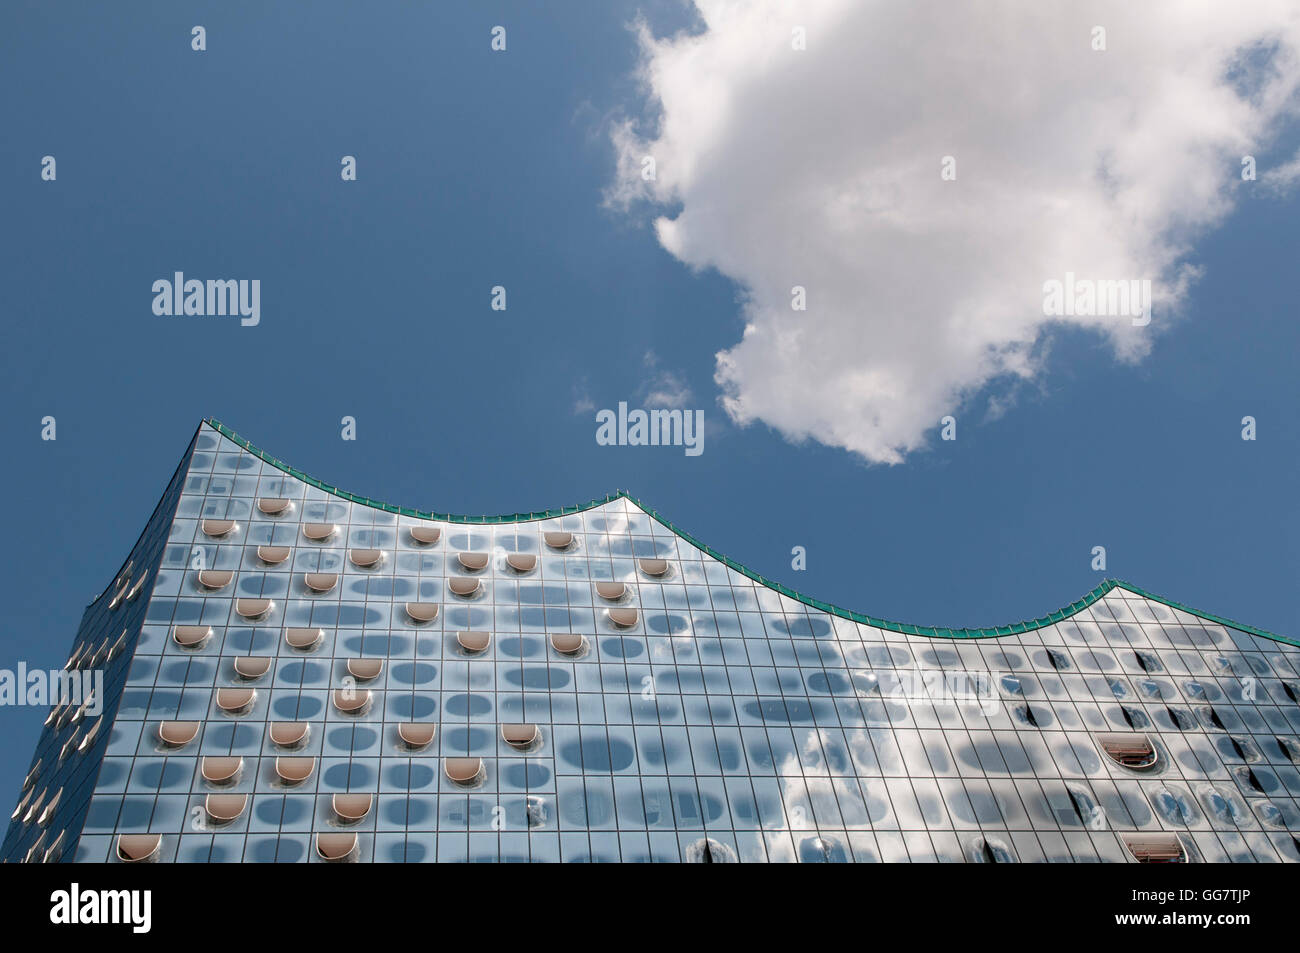 Die Elbphilharmonie Concert Hall, Hamburg, Deutschland. Von den Architekten Herzog & de Meuron entworfen. Detail der Glasfassade. Stockfoto